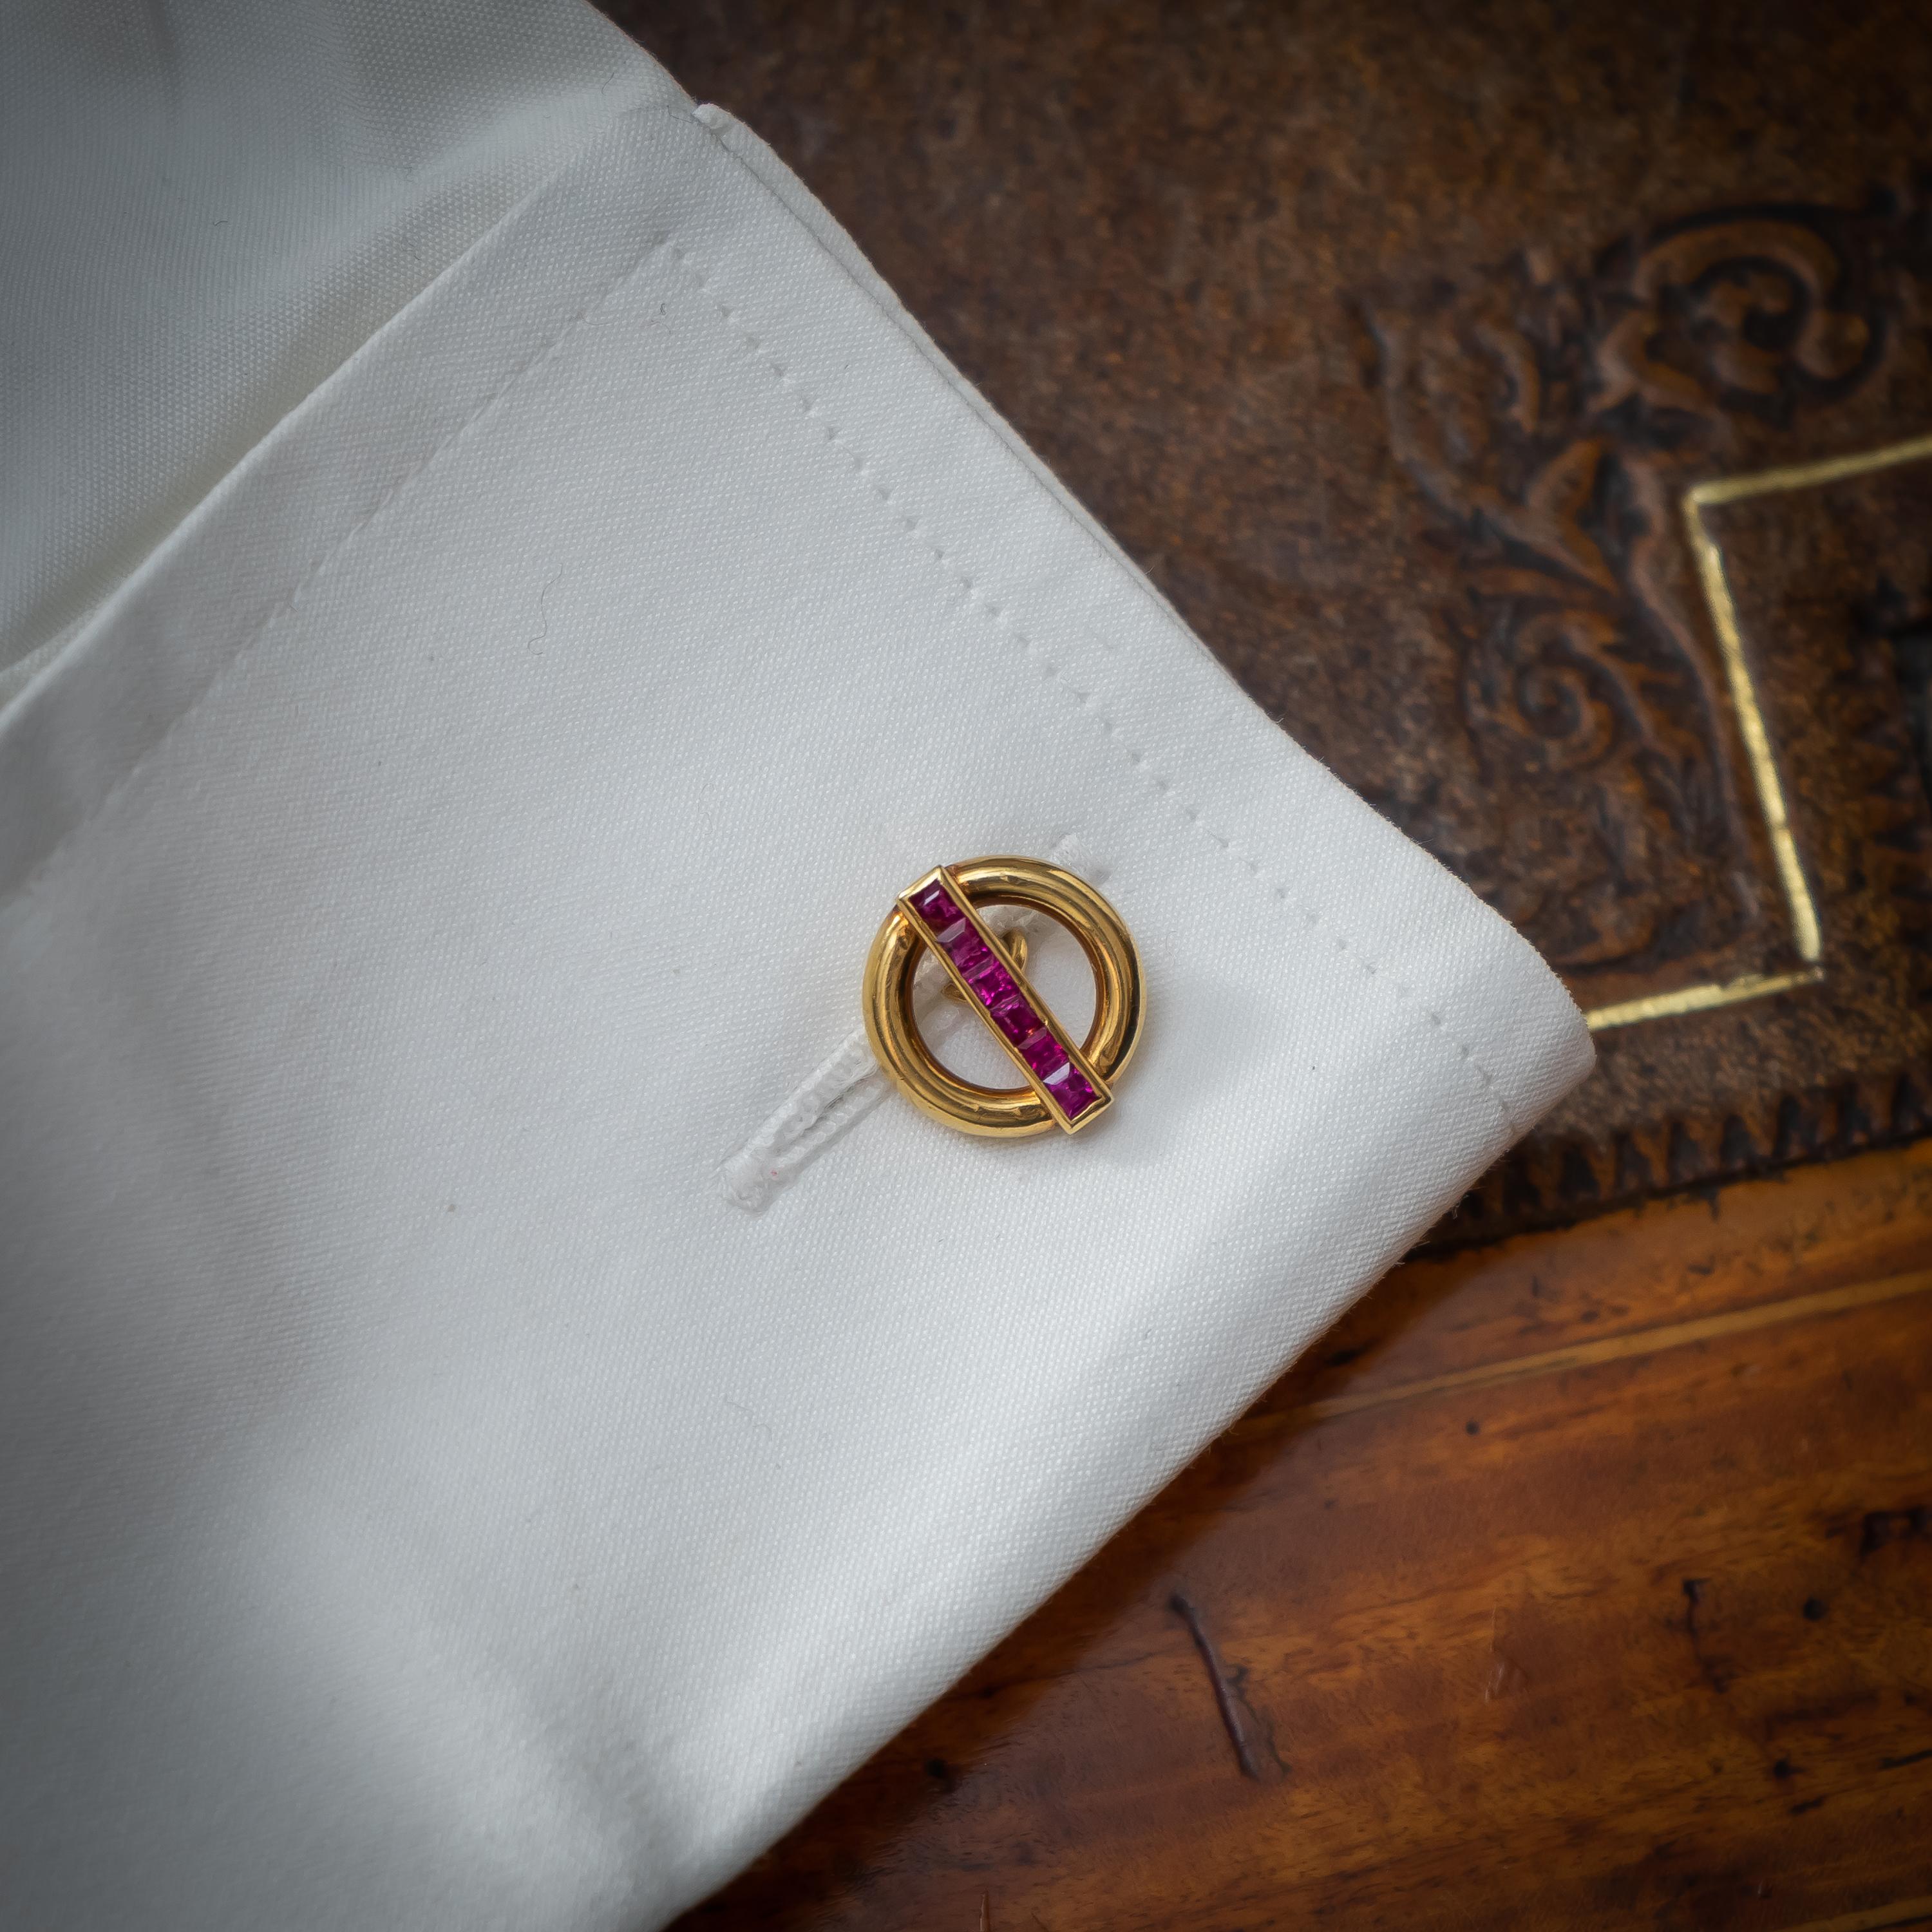 Ein Paar Vintage-Manschettenknöpfe von Cartier aus Gold und Rubin. Jedes der doppelten Glieder besteht aus einem offenen Kreis mit einer Reihe von quadratisch geschliffenen Rubinen, montiert in 18-karätigem Gold, signiert und nummeriert, um 1950.